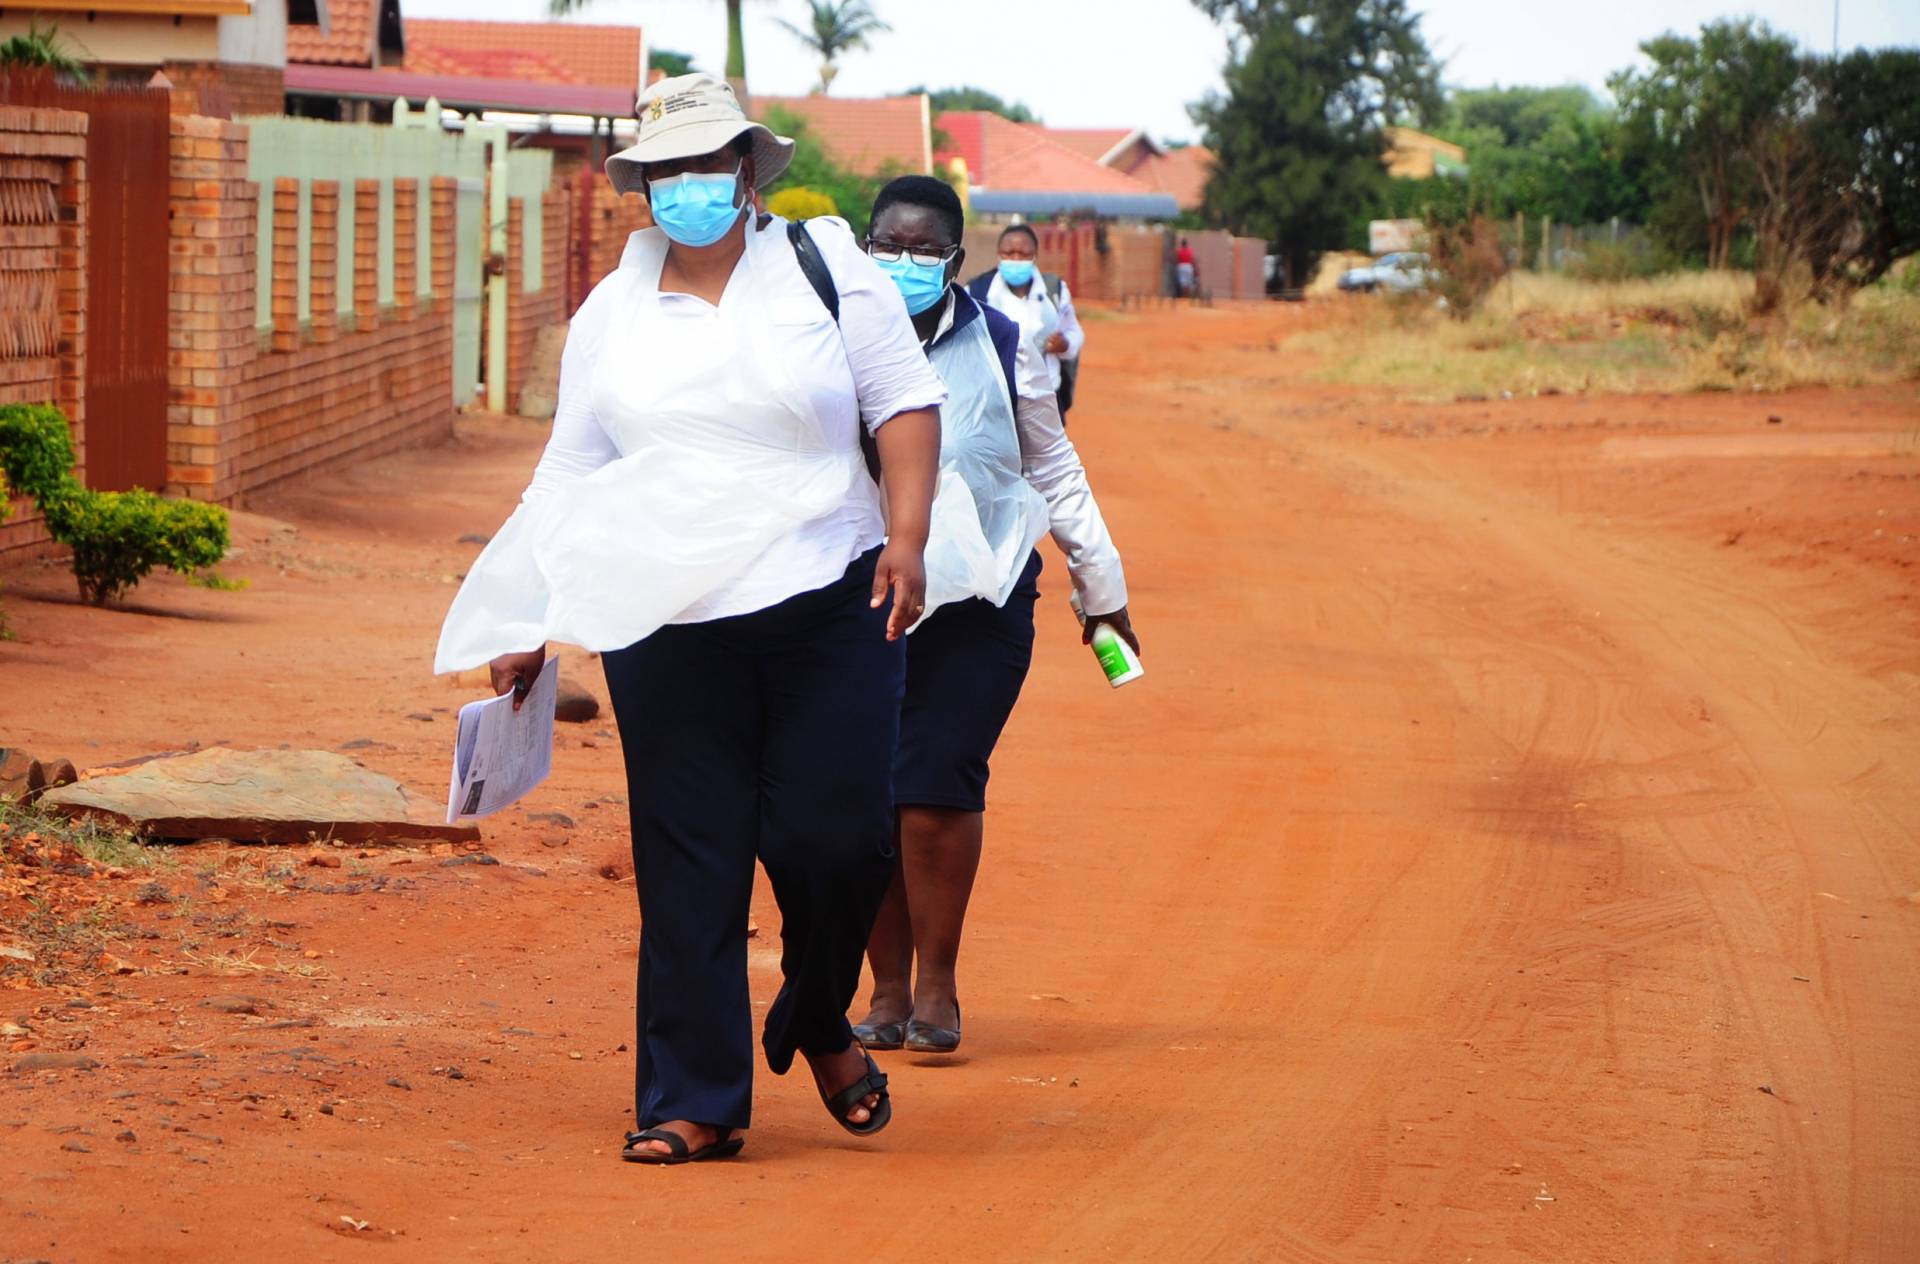 Women in masks walk along a road in Africa